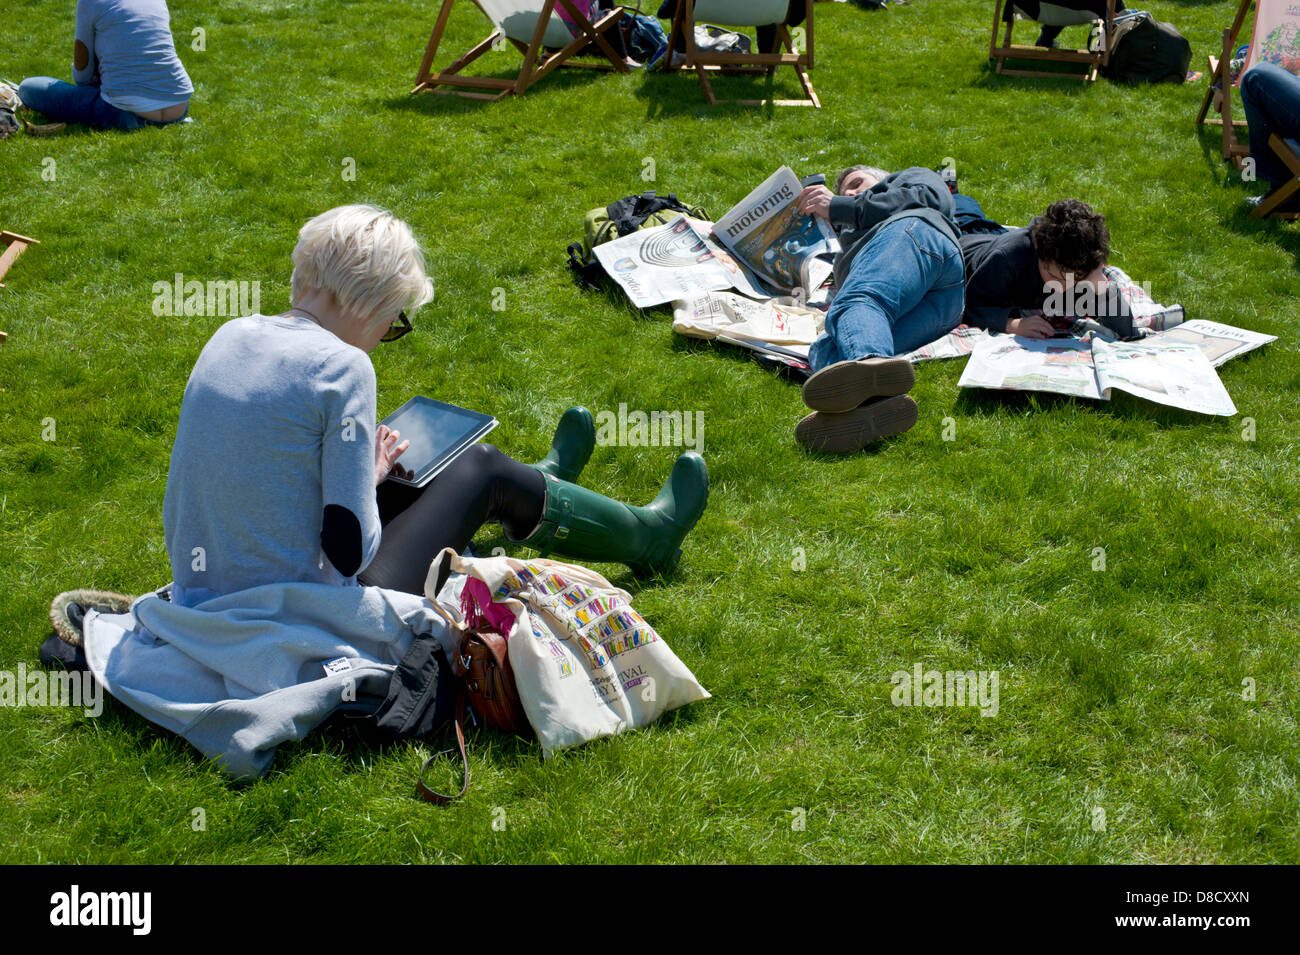 Les gens de détente sur pelouse au soleil à Hay Festival 2013 Hay-on-Wye Powys Pays de Galles UK Banque D'Images